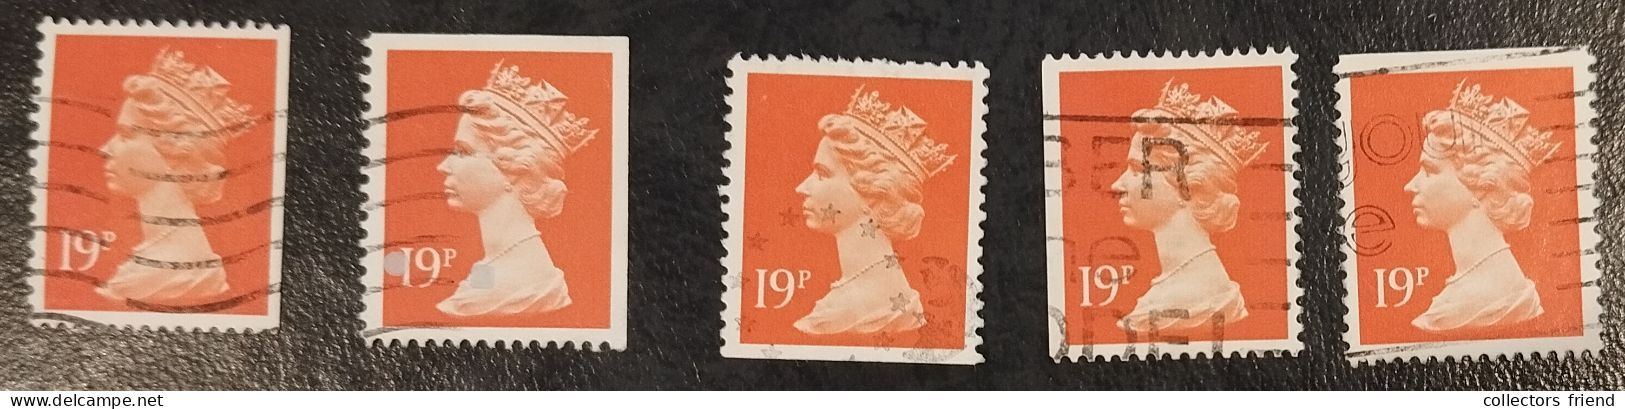 Grande Bretagne - Great Britain - Großbritannien - Elizabeth II - 19p -  Collection Of Imp. Variations - Used - Machin-Ausgaben